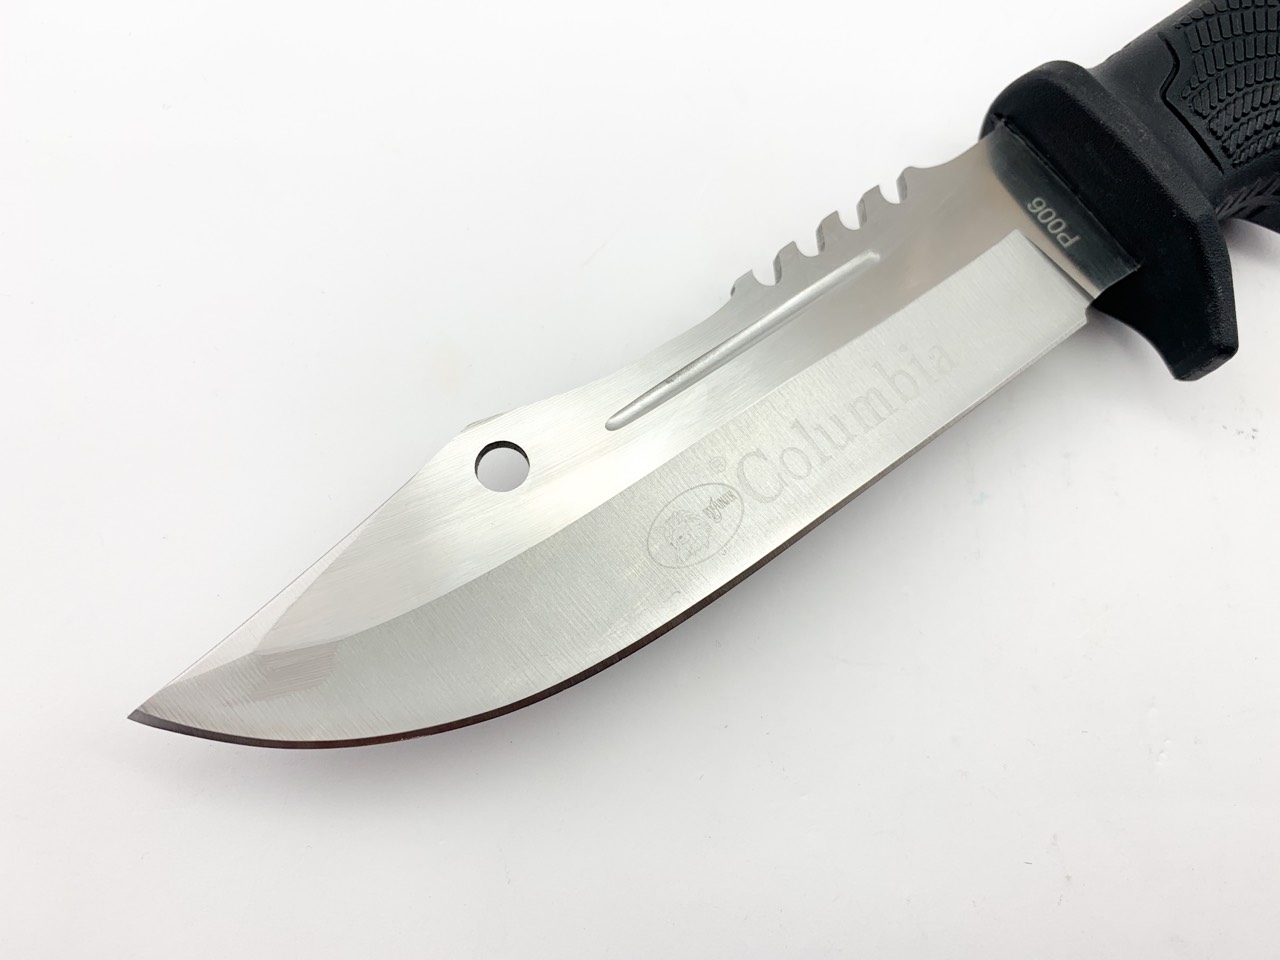 Ловен нож дране ,клане с фиксирано острие - Columbiq